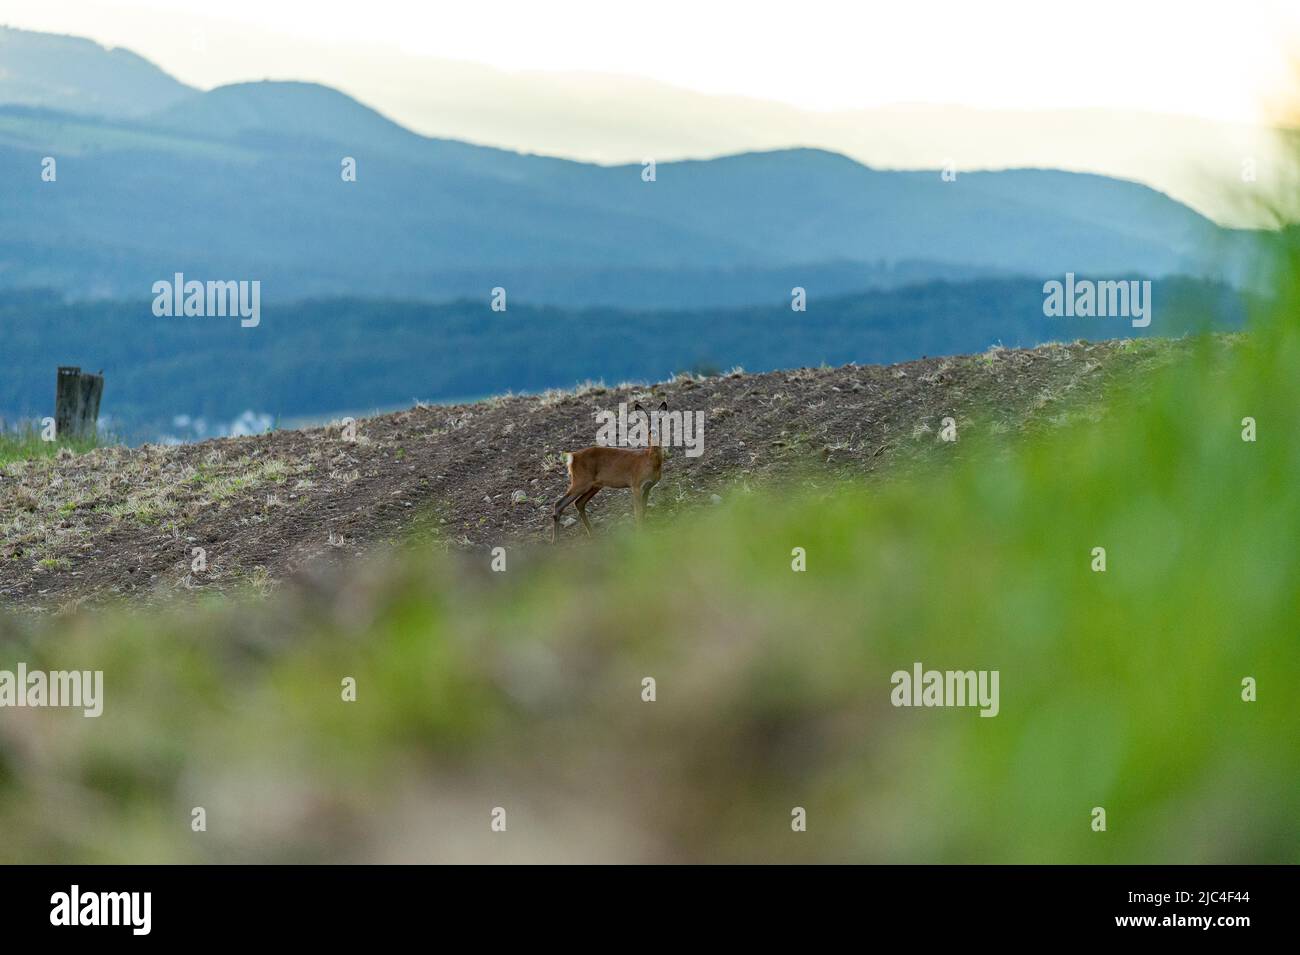 Cerf de Virginie (Capranolus capranolus), doe debout dans un champ, canton d'Argau, Suisse Banque D'Images